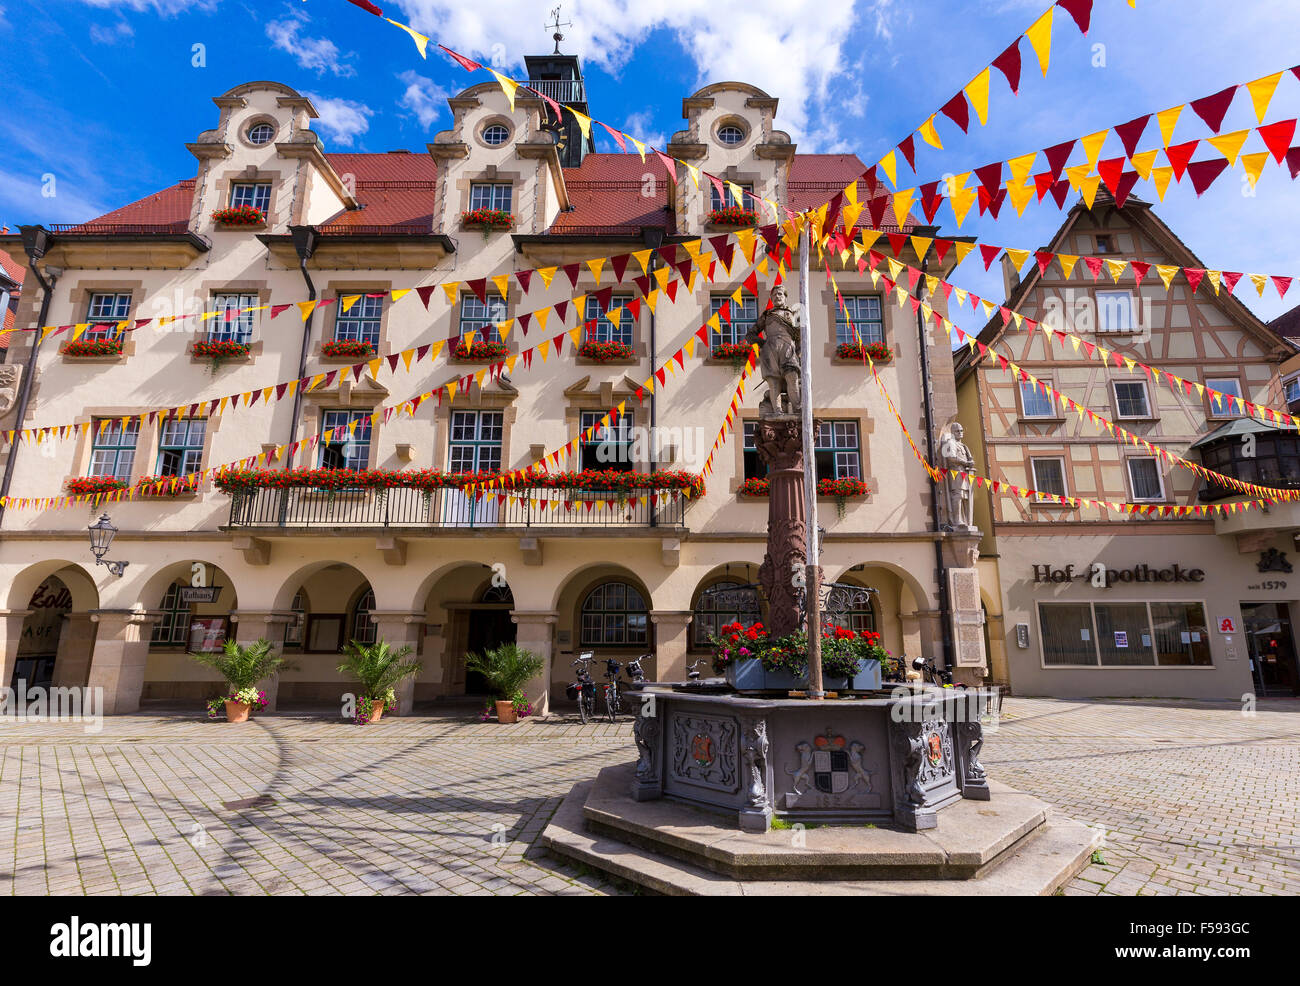 El ayuntamiento y la fuente del mercado, el centro histórico, Sigmaringen, Baden-Württemberg, Alemania Foto de stock